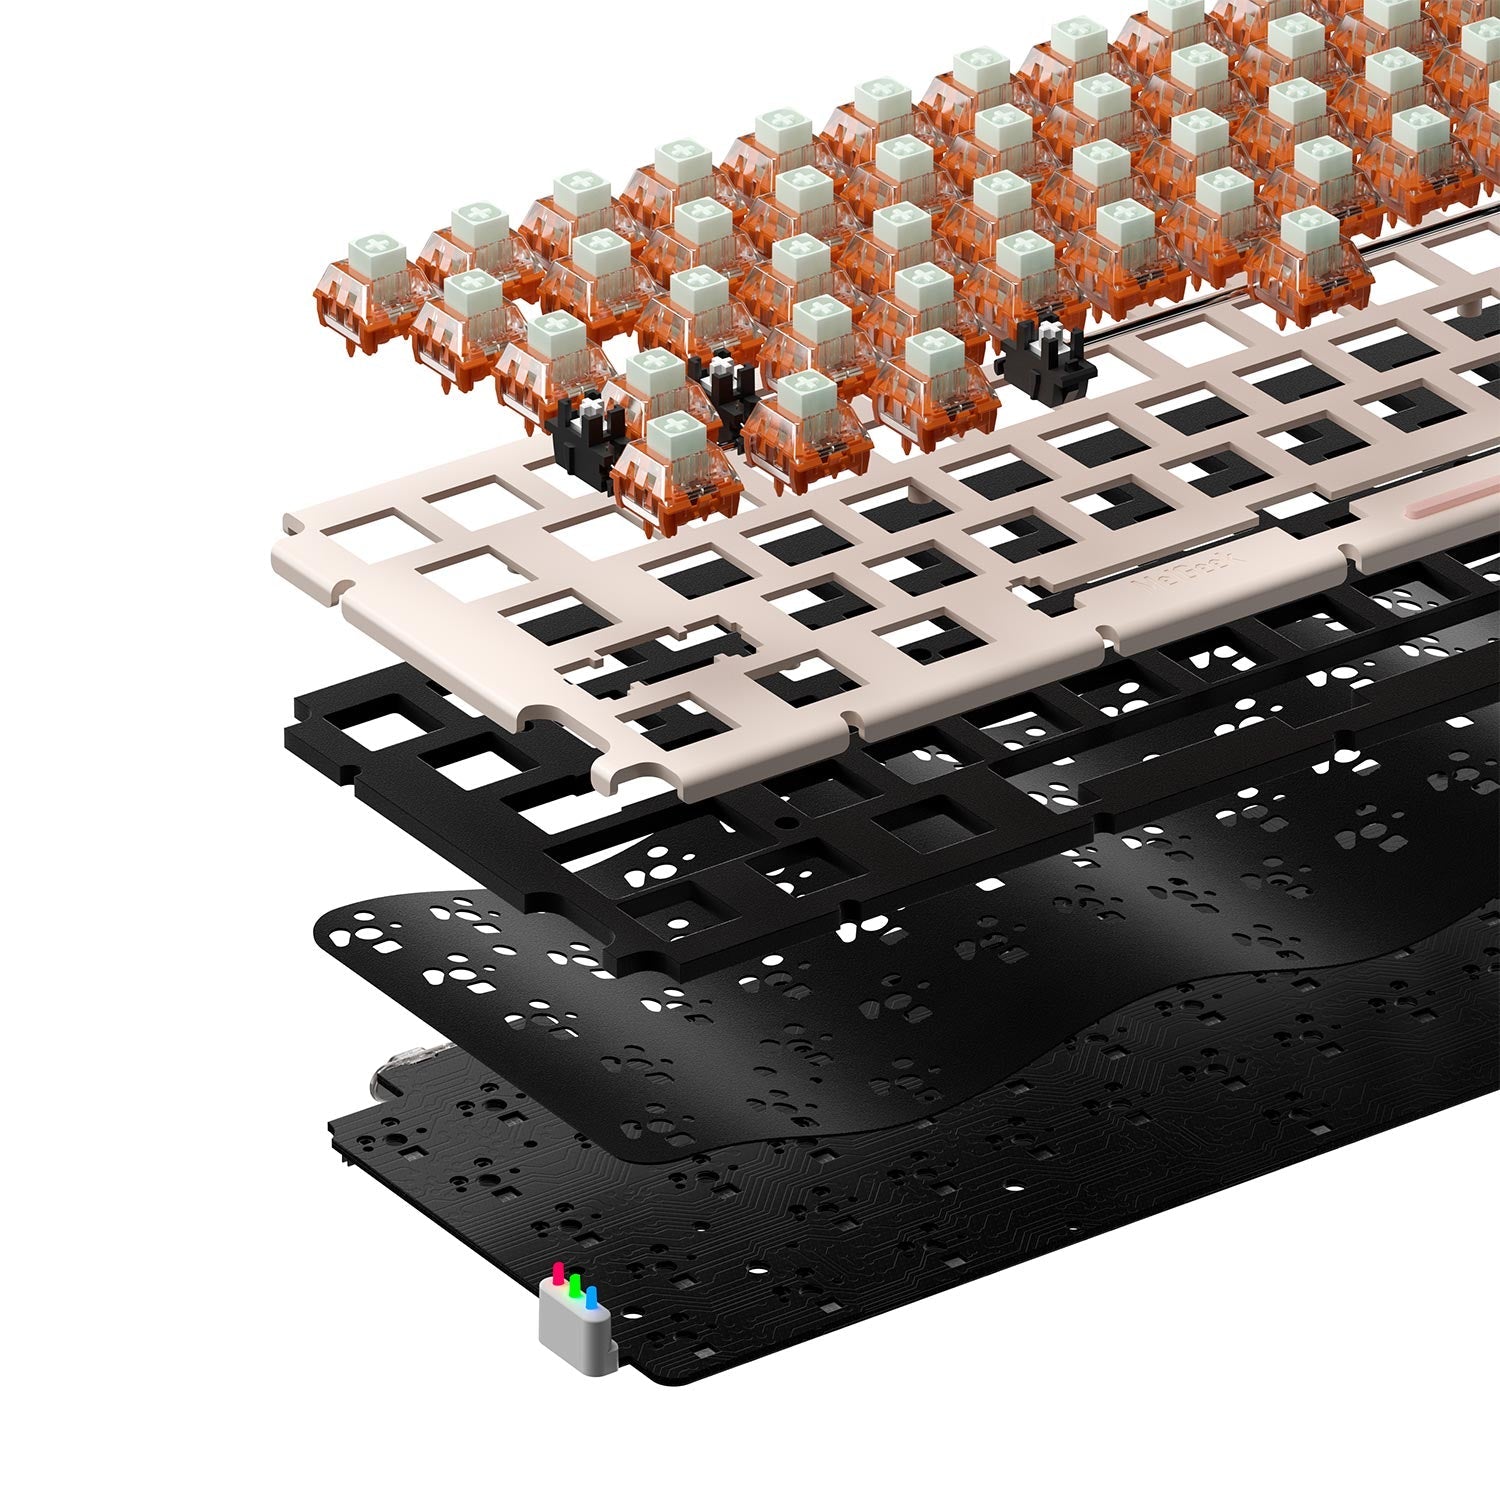 MelGeek Mojo68 Christian Durchsichtige, benutzerdefinierte und programmierbare mechanische Tastatur